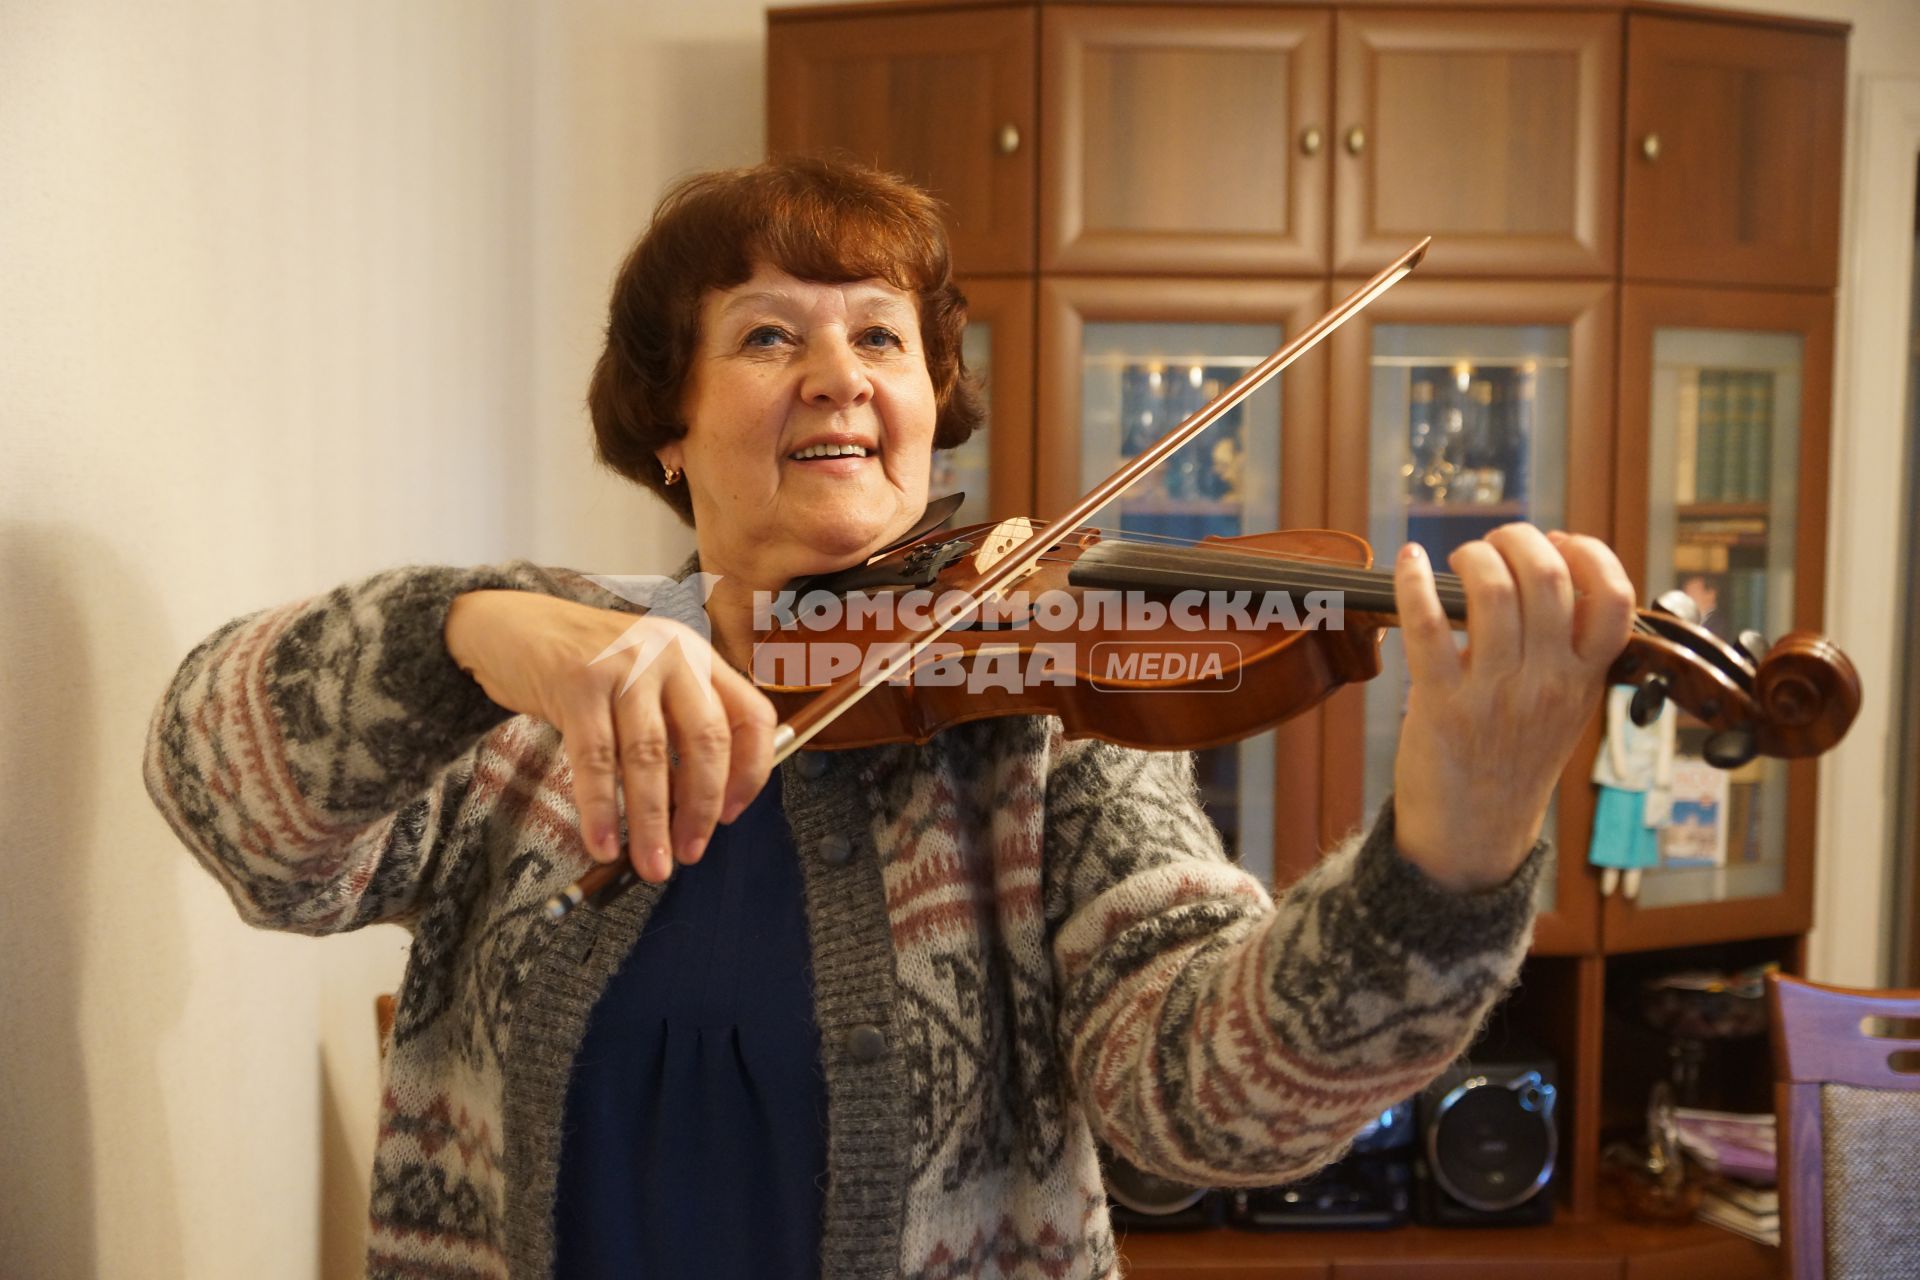 Самара. Женщина пенсионного возраста играет на скрипке.